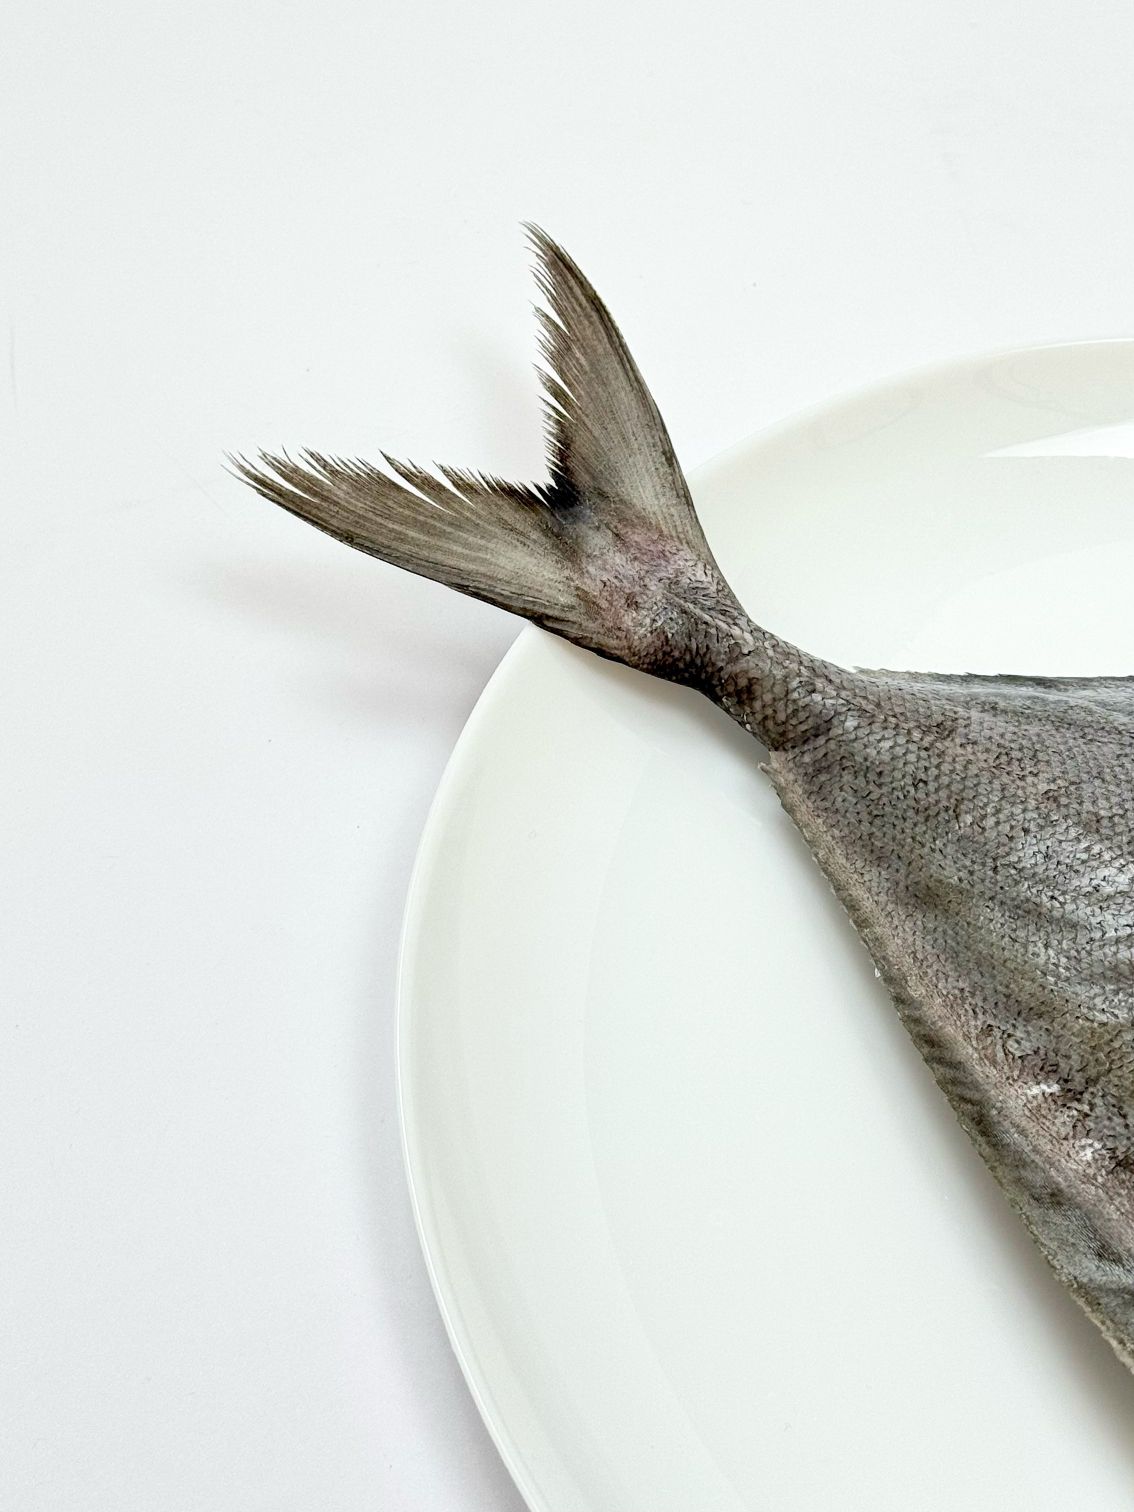  ماهی حلوا سیاه شکم خالی 